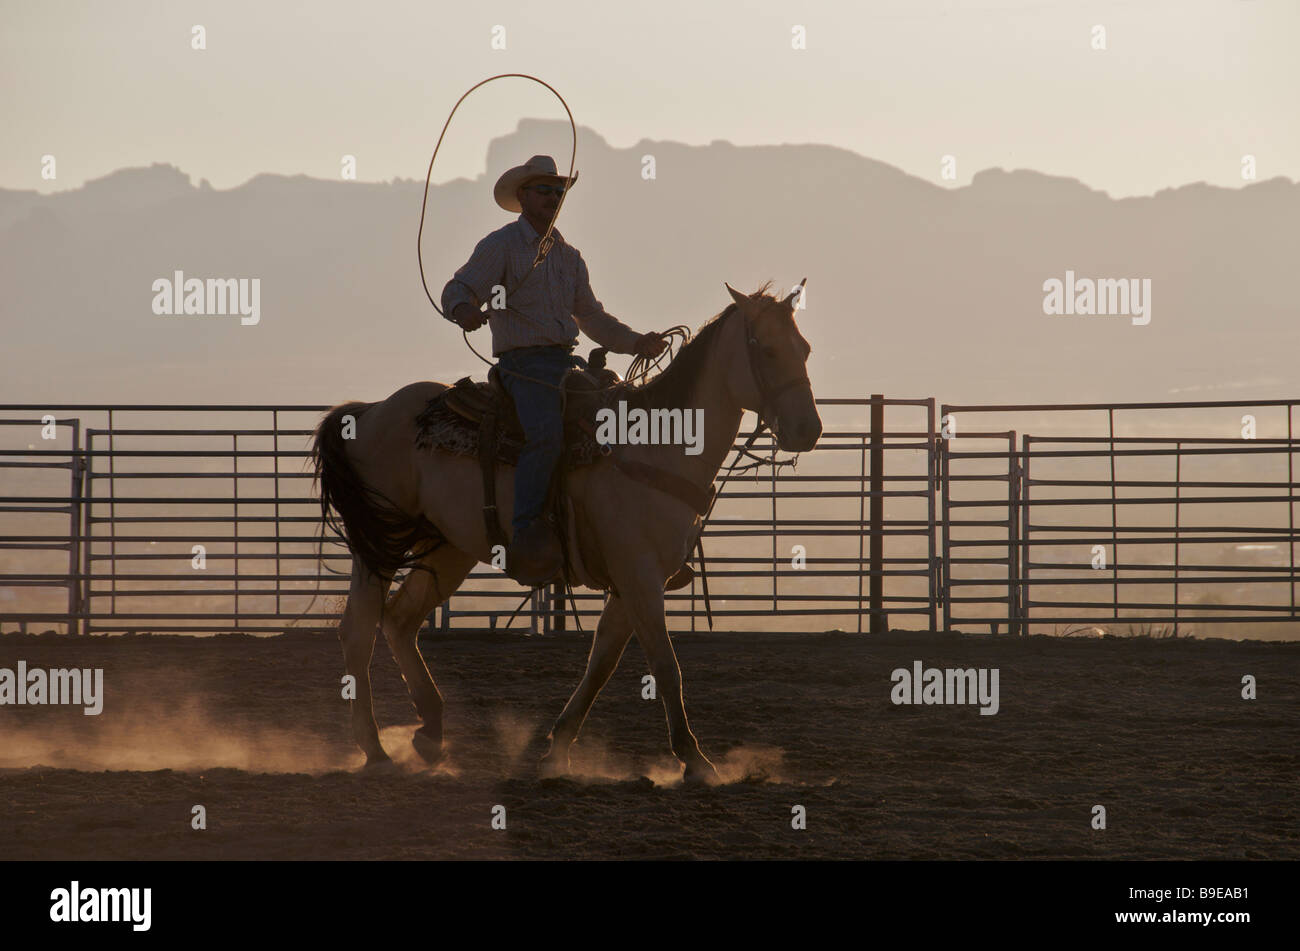 Silhouette cowboy on horse with lasso Golden Valley Kingman Arizona USA Stock Photo